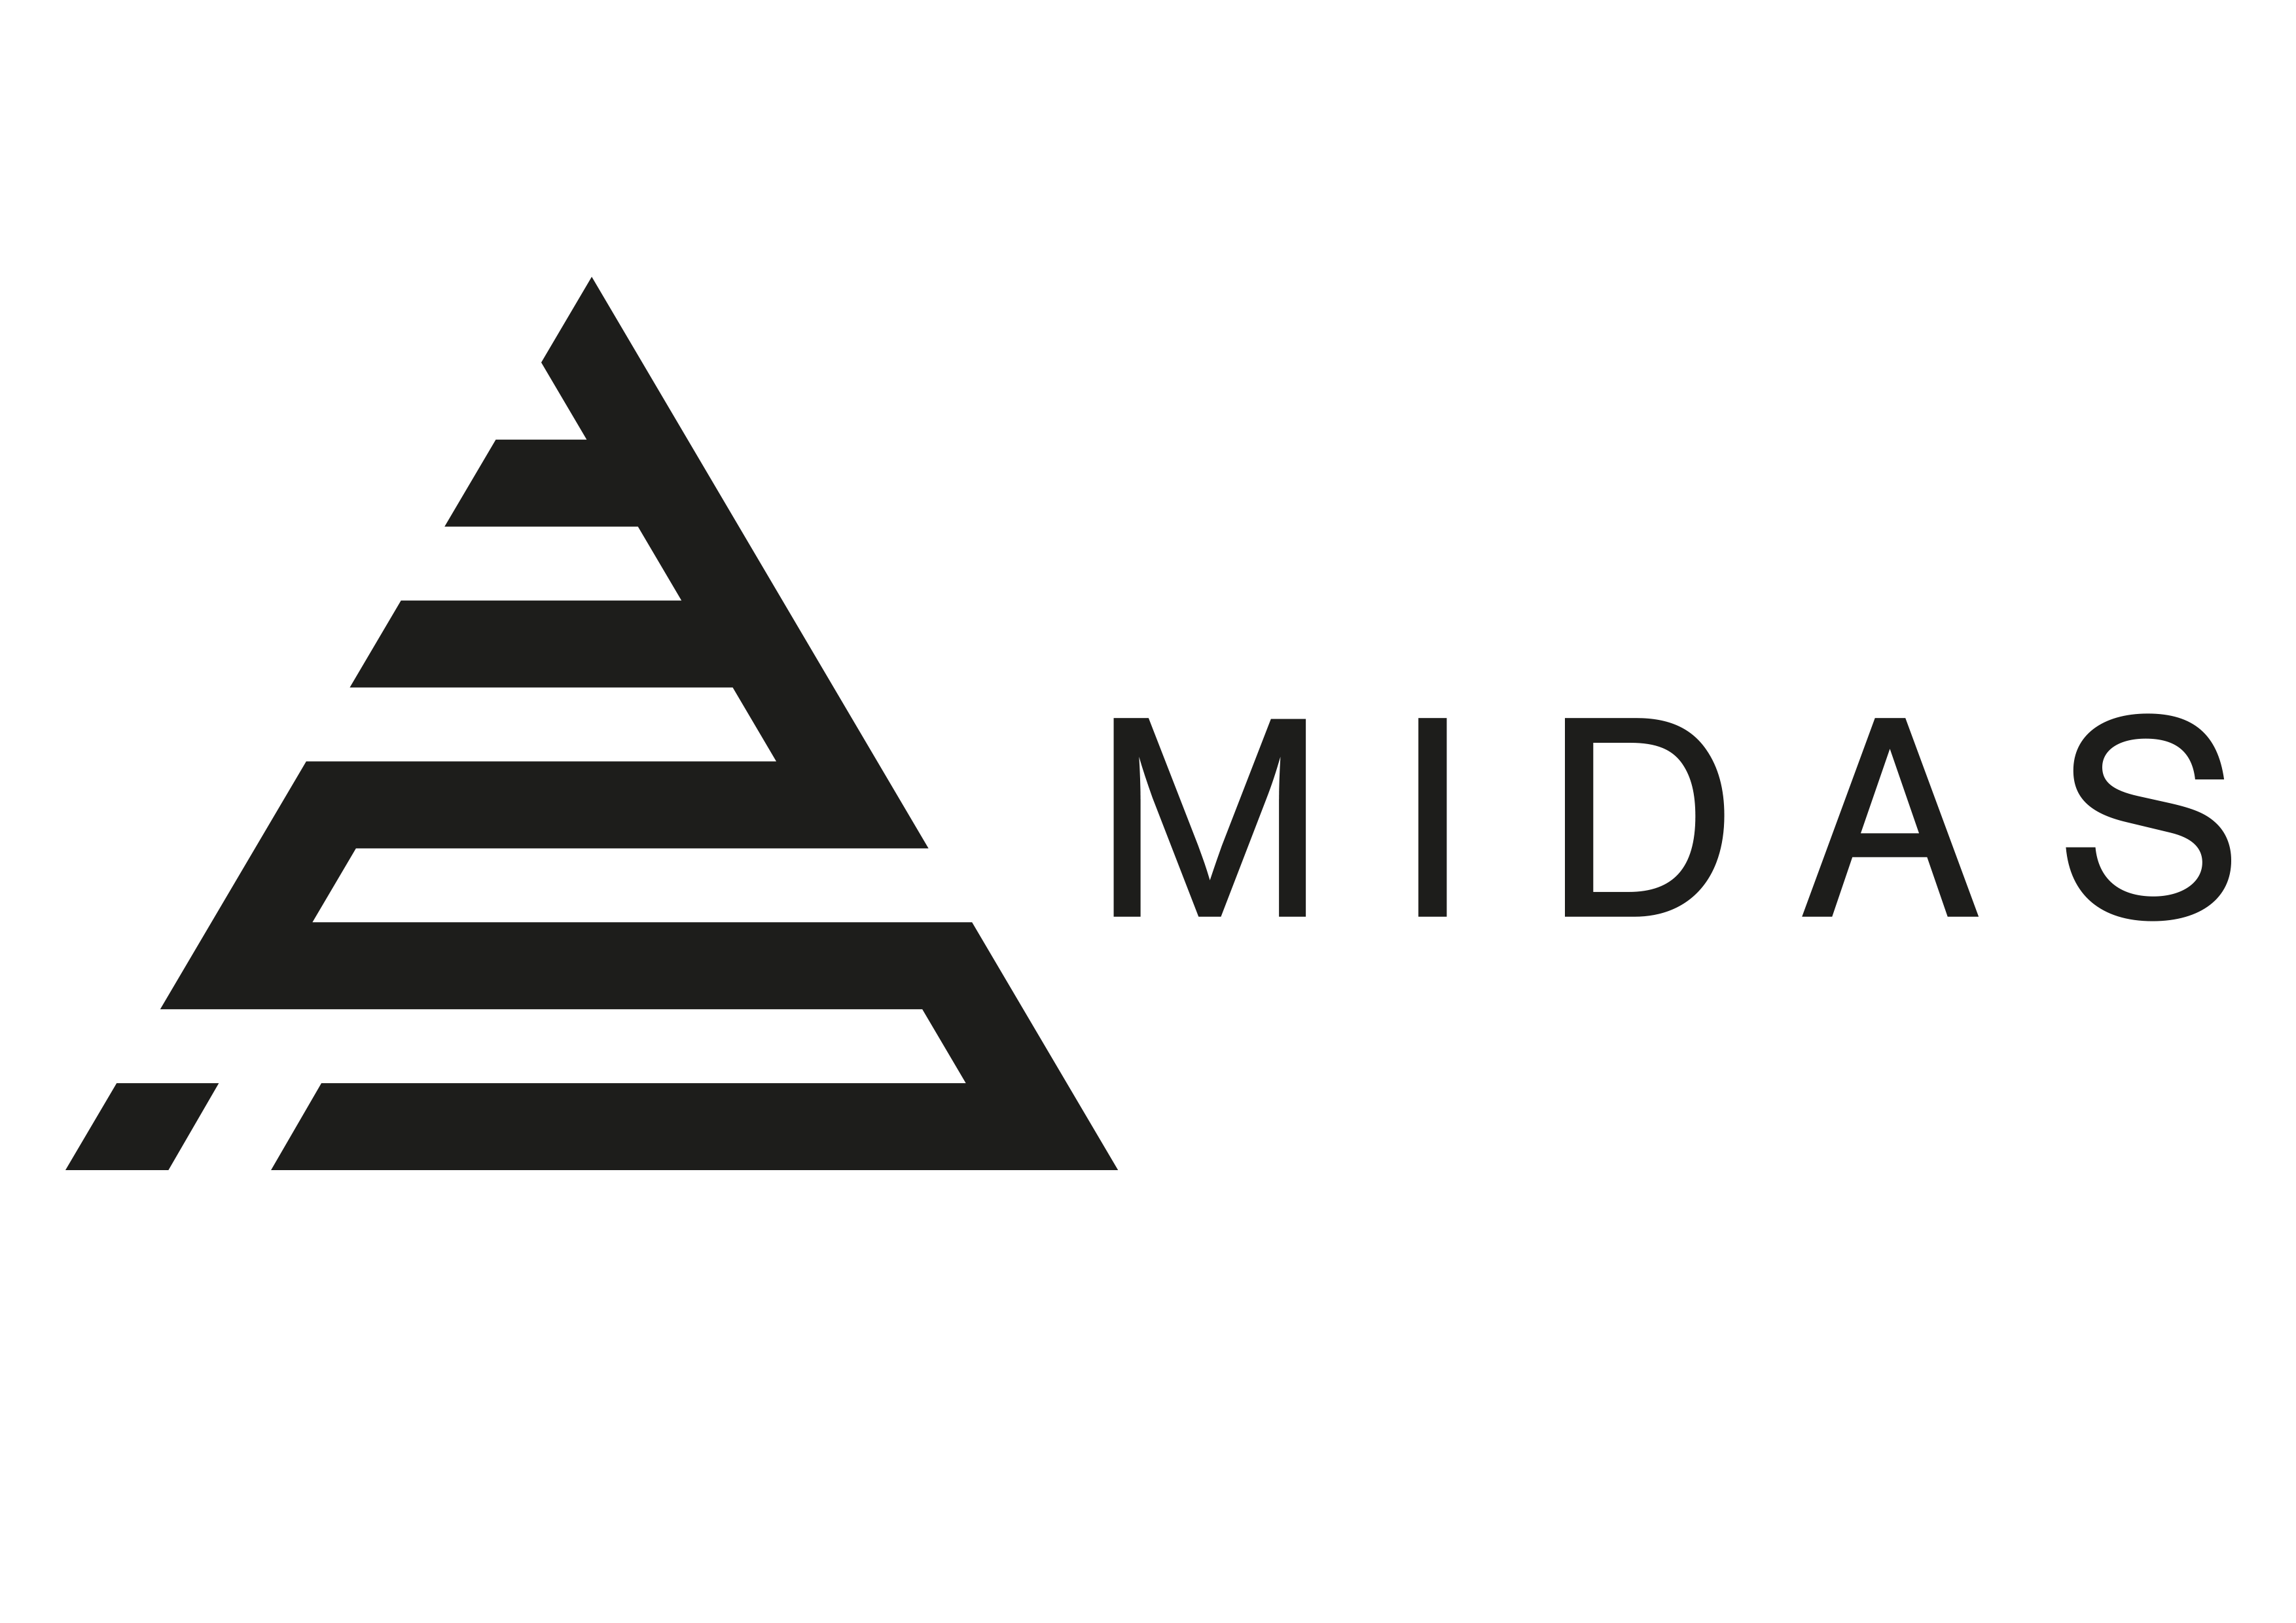 Midas Logo - Open GI Partner Network